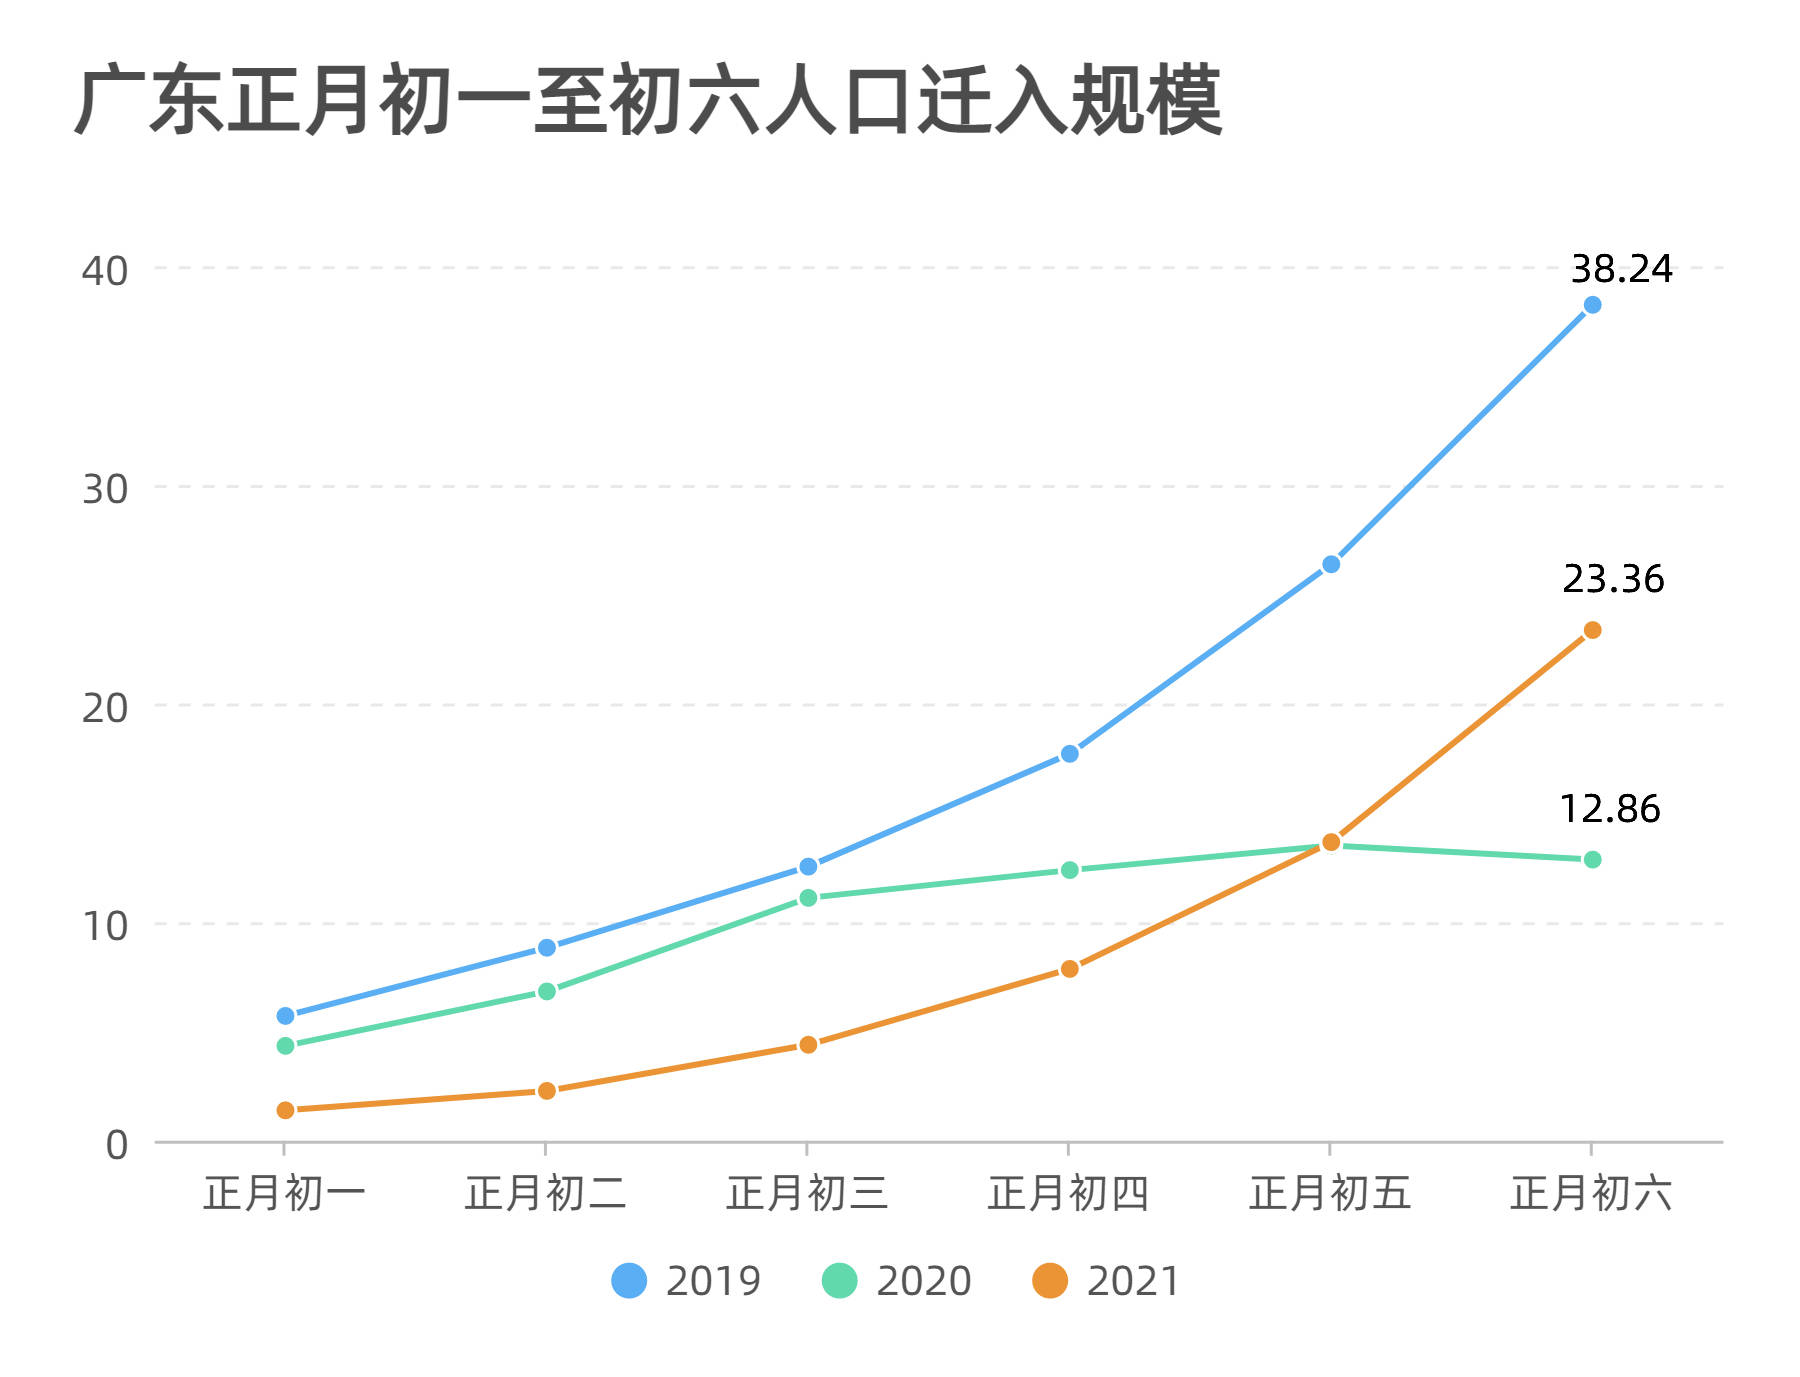 入粤人口规模为去年1.8倍，广深超六成返程客来自省内